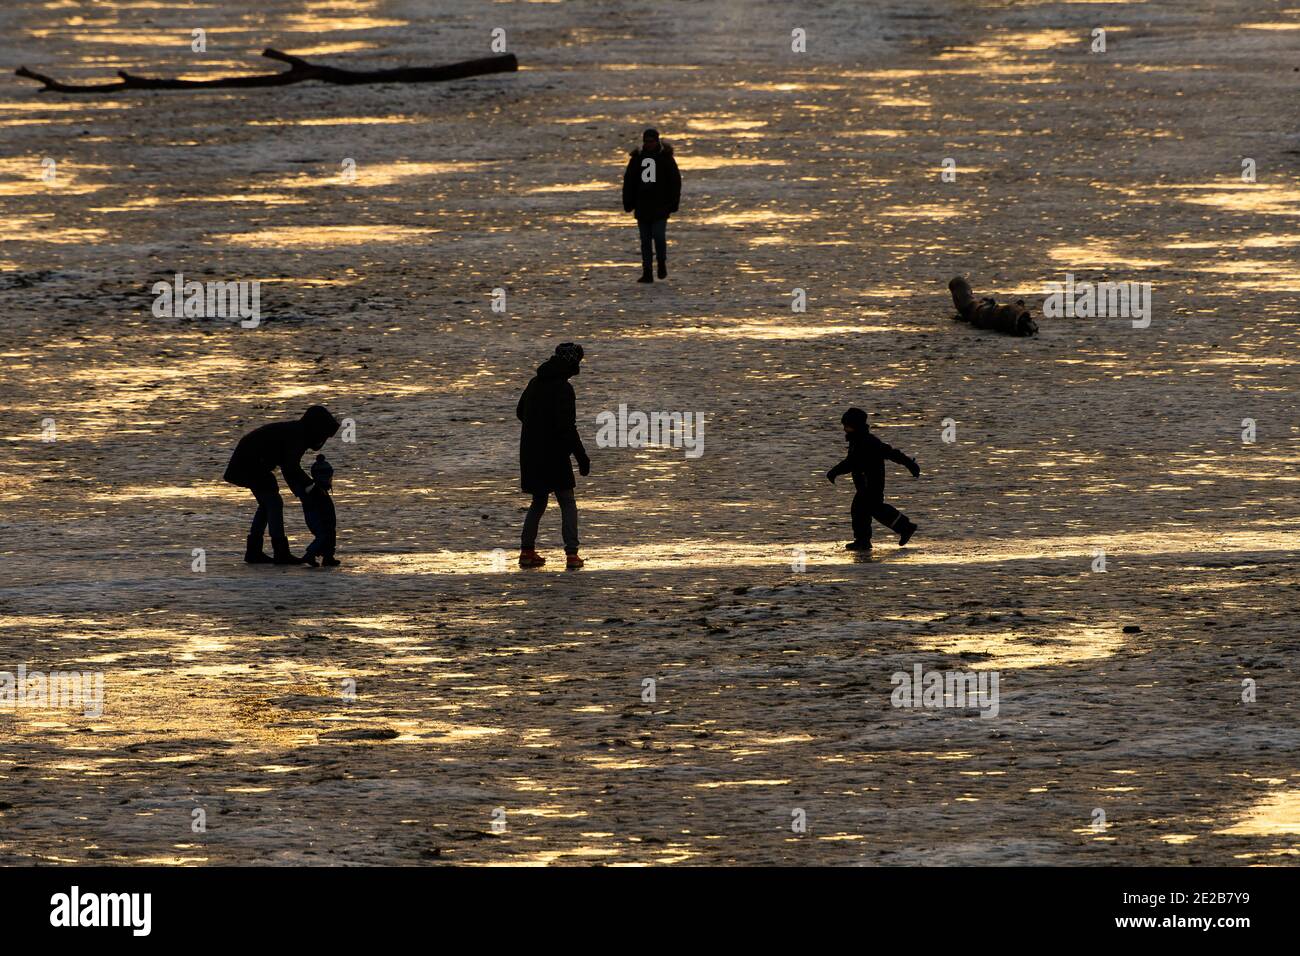 Munich, Alemania. 13 de enero de 2021. Una familia con niños se deslizó a través de las orillas congeladas del Isar, brillando en la última luz del día. Crédito: Peter Kneffel/dpa/Alamy Live News Foto de stock